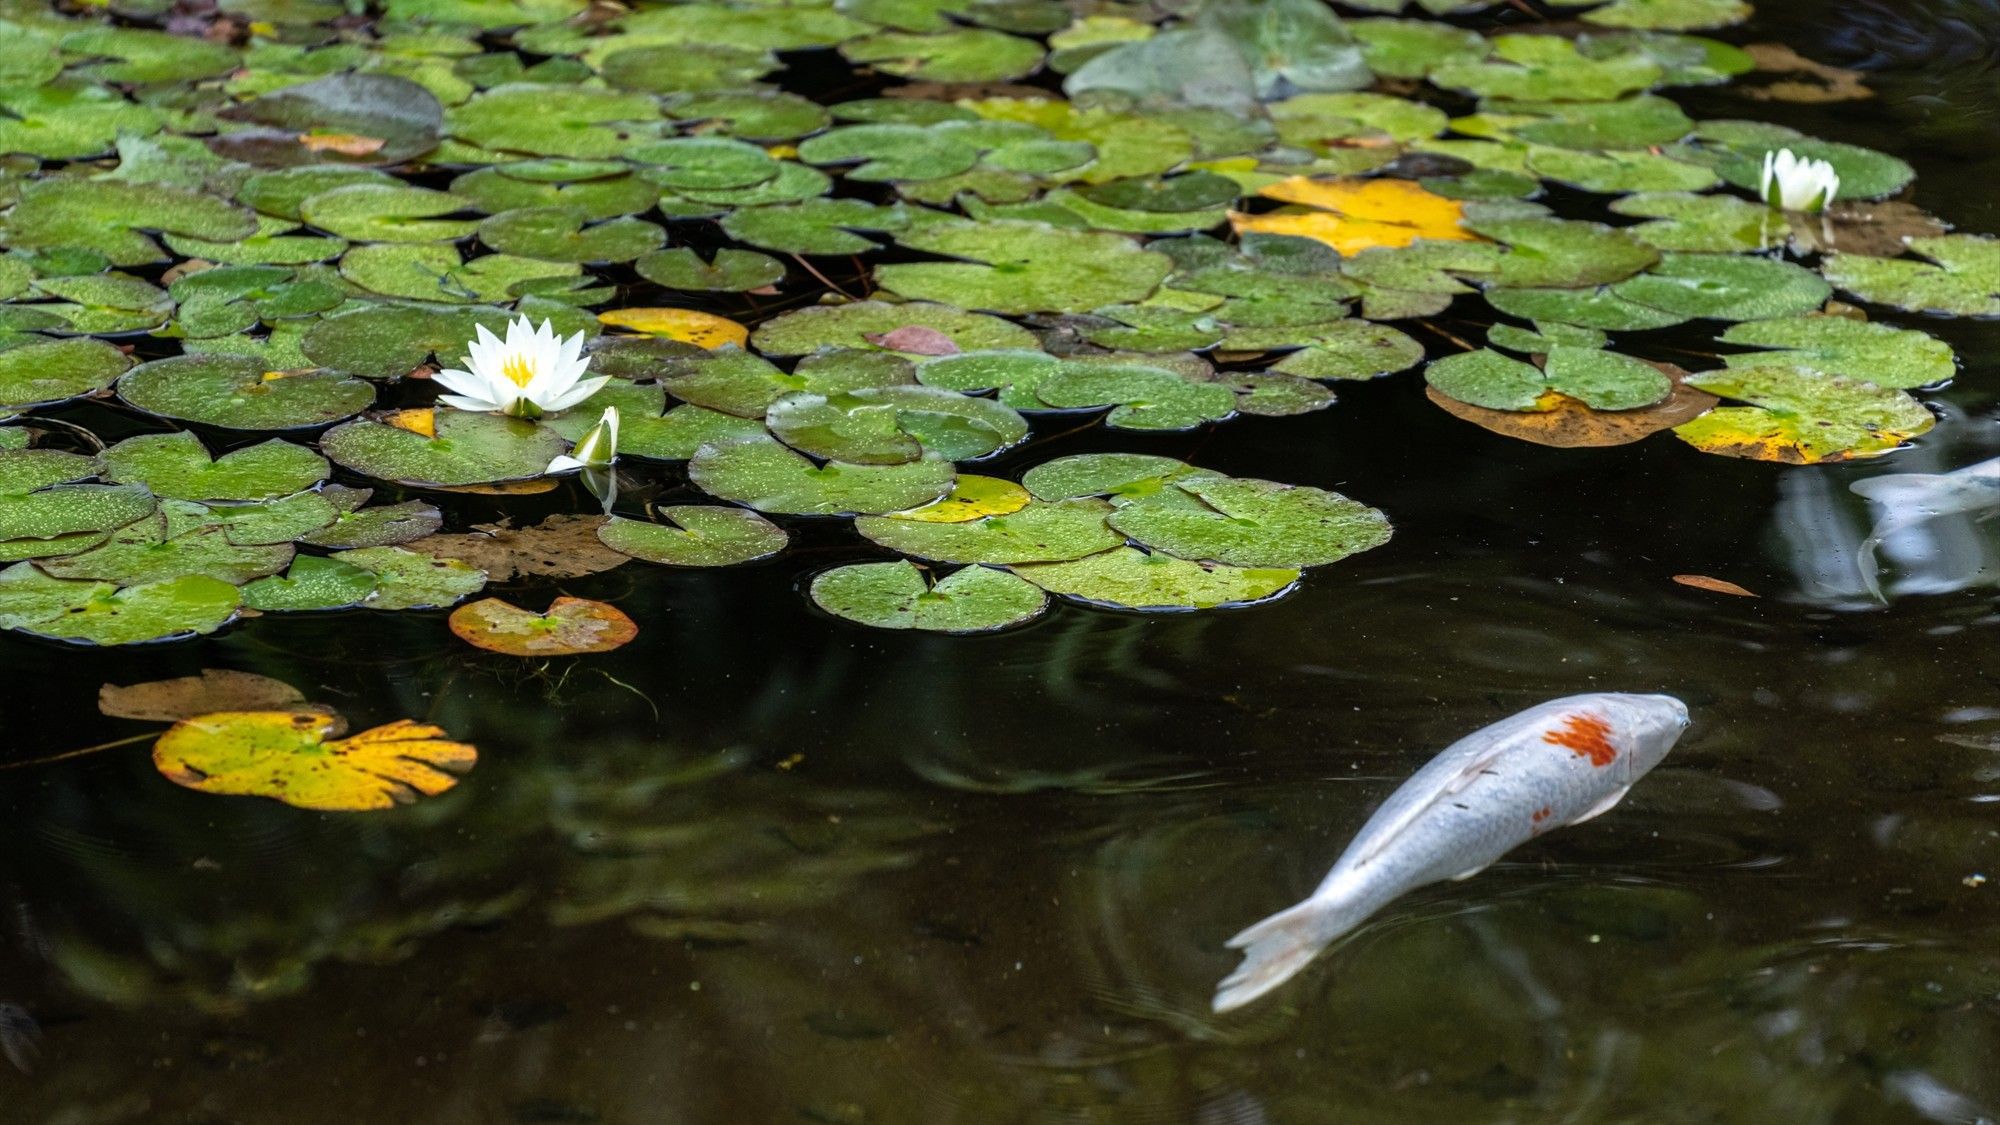 【中庭】絵画のような睡蓮が咲く池の中には鯉が悠然と泳いでいます